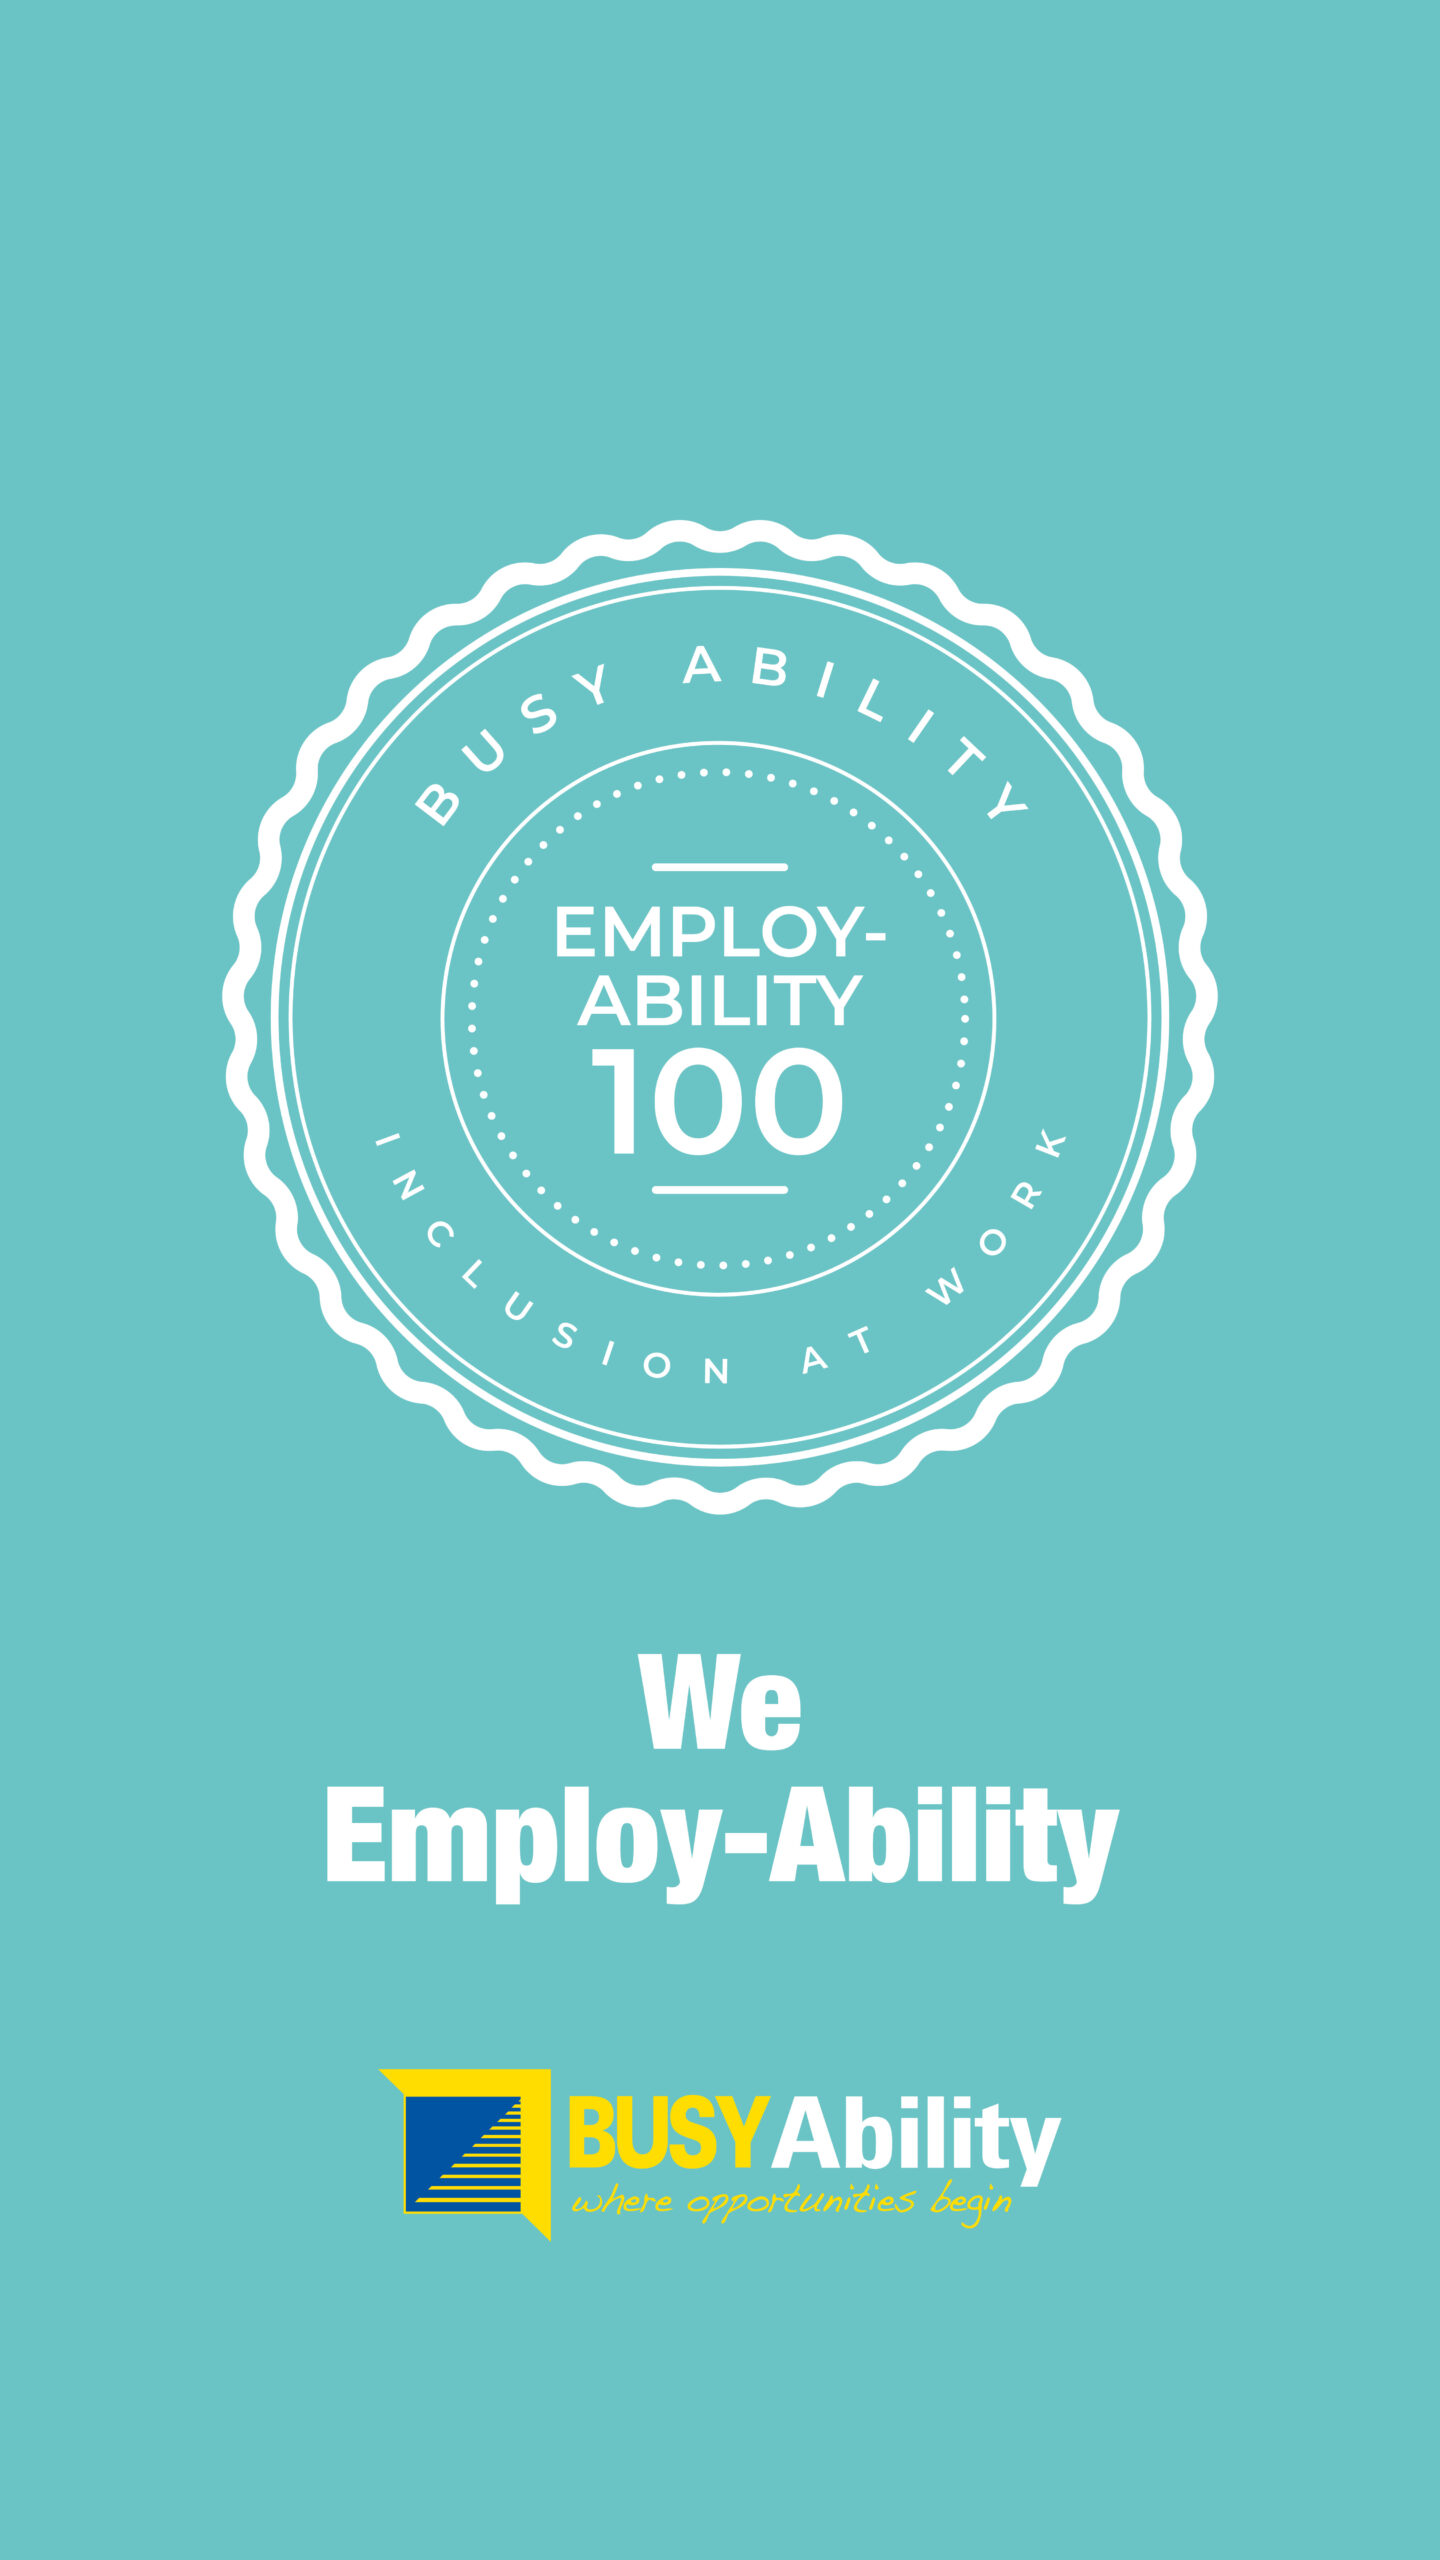 We Employ Ability logo promotion image